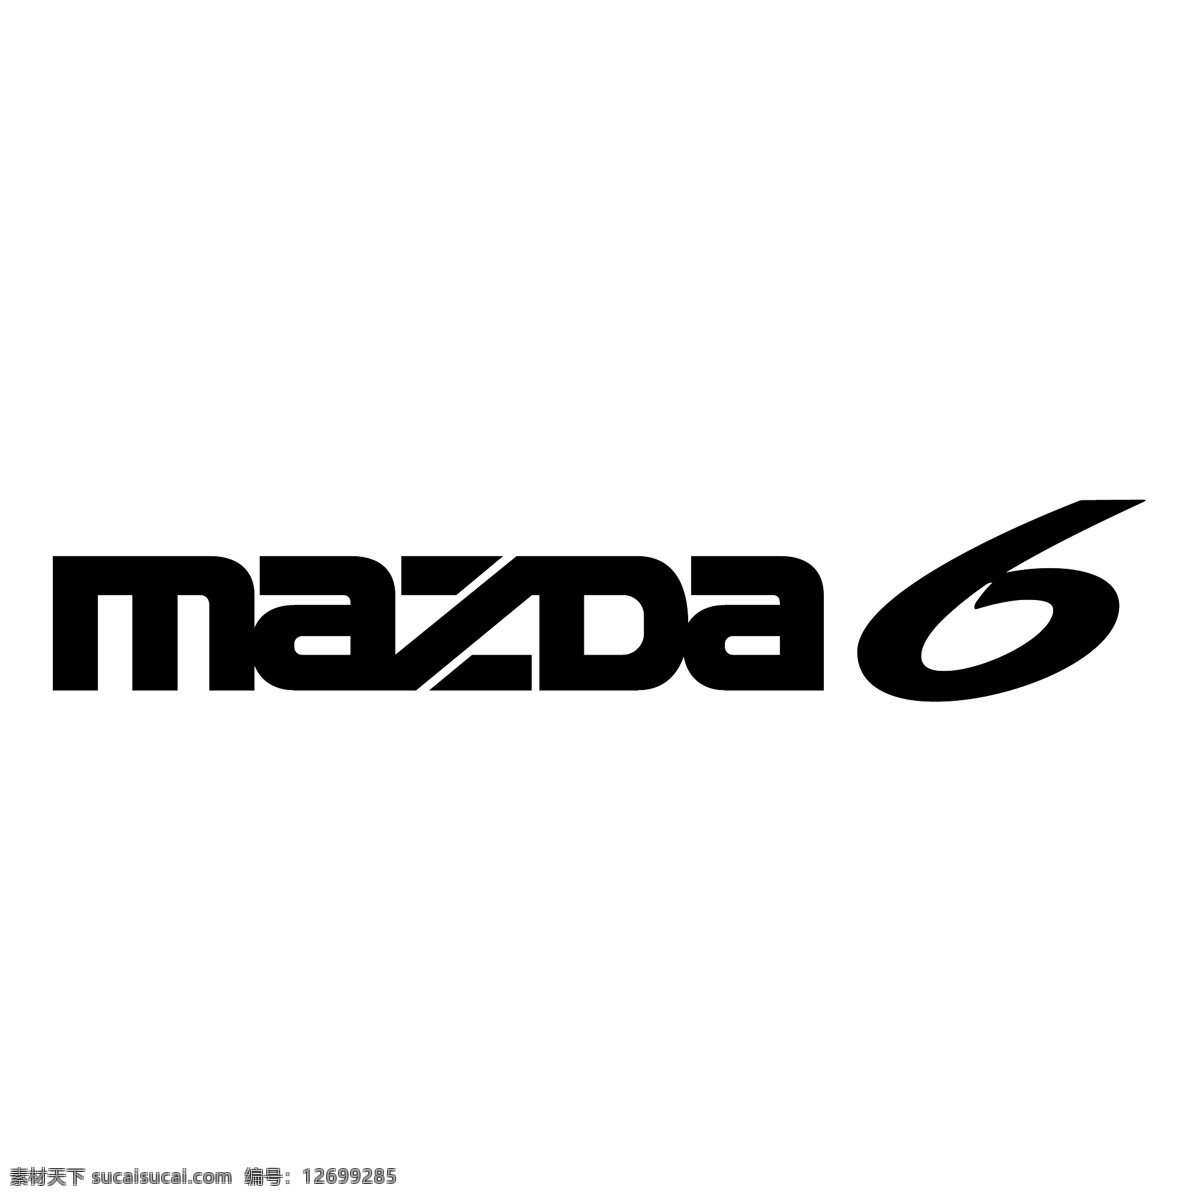 马自达 标识 标识为免费 psd源文件 logo设计